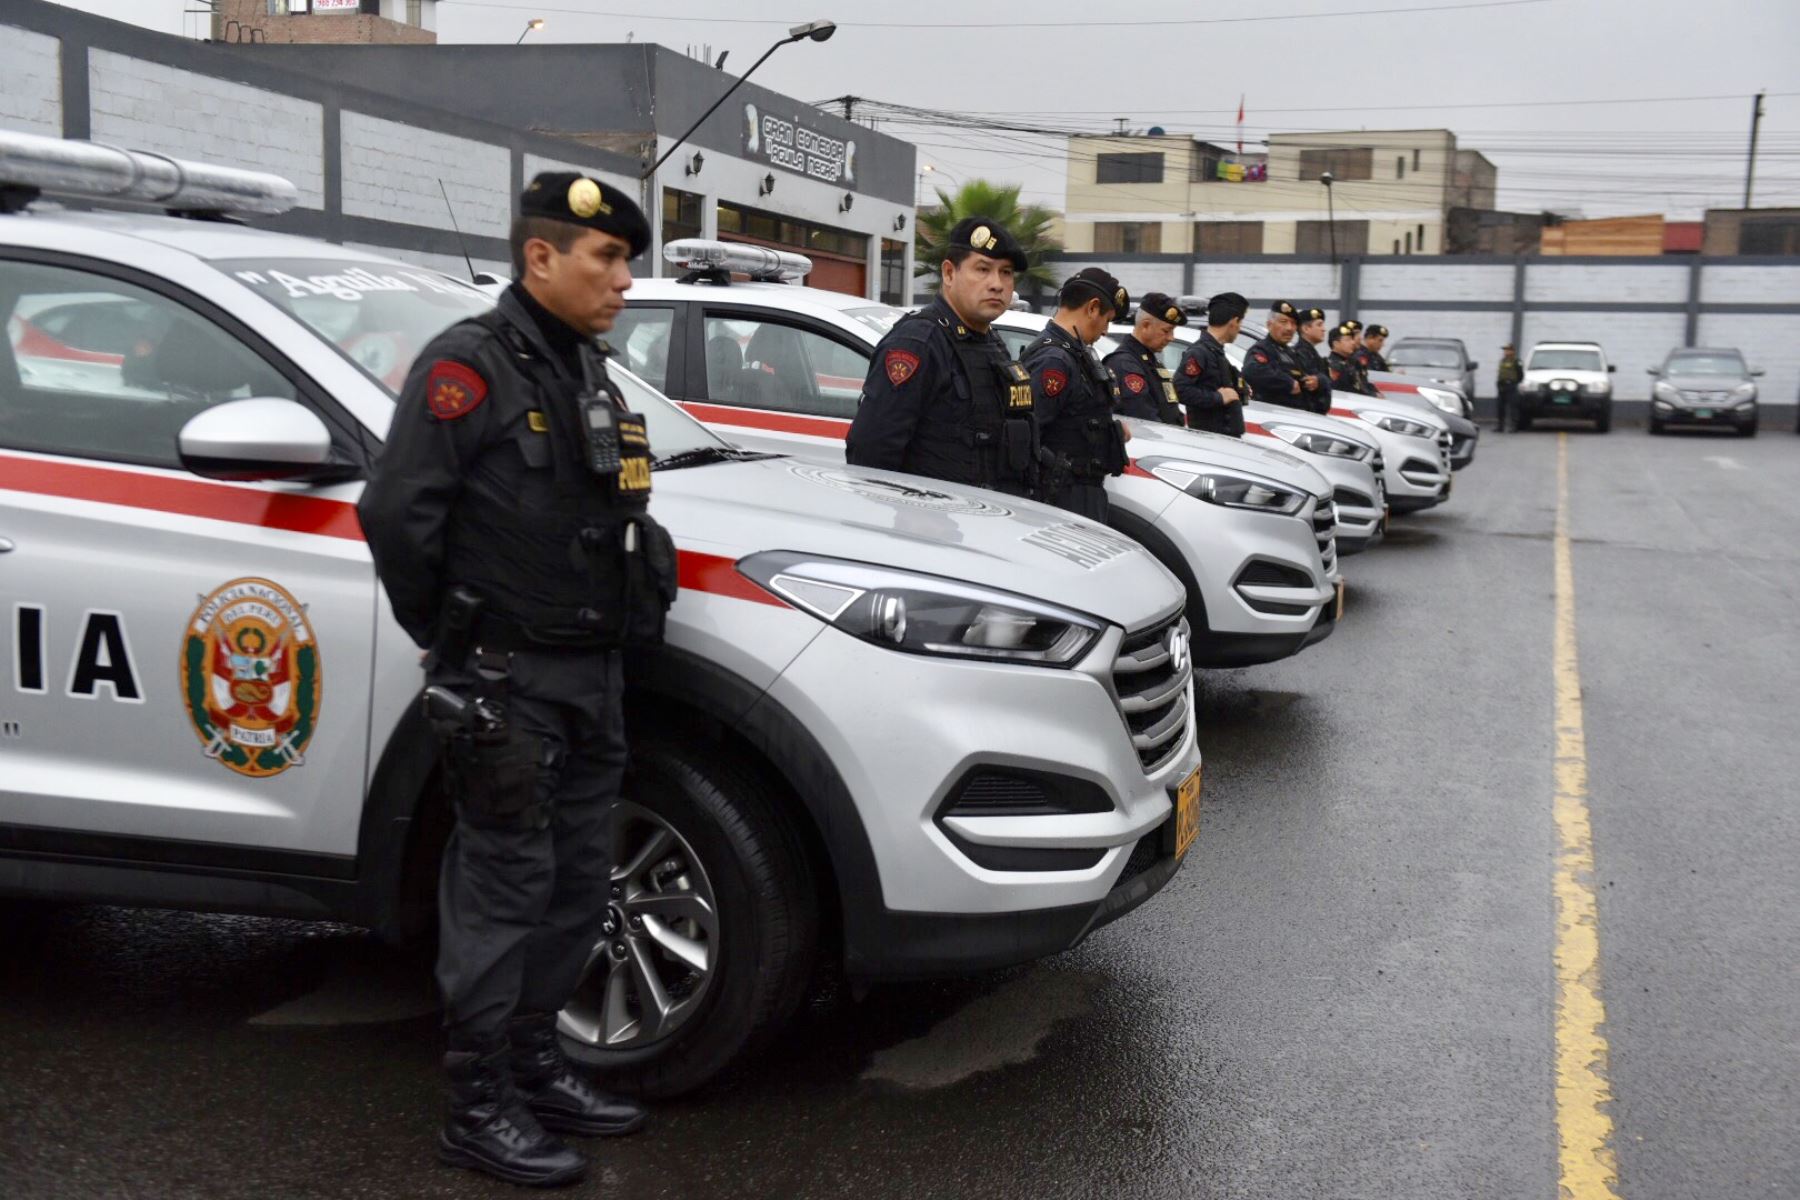 Ministro del Interior Mauro Medina participa en ceremonia de entrega de patrulleros al Departamento de Seguridad de Bancos Aguilas Negras de la Policía Peru por parte de Asbanc. Foto: ANDINA/Mininter